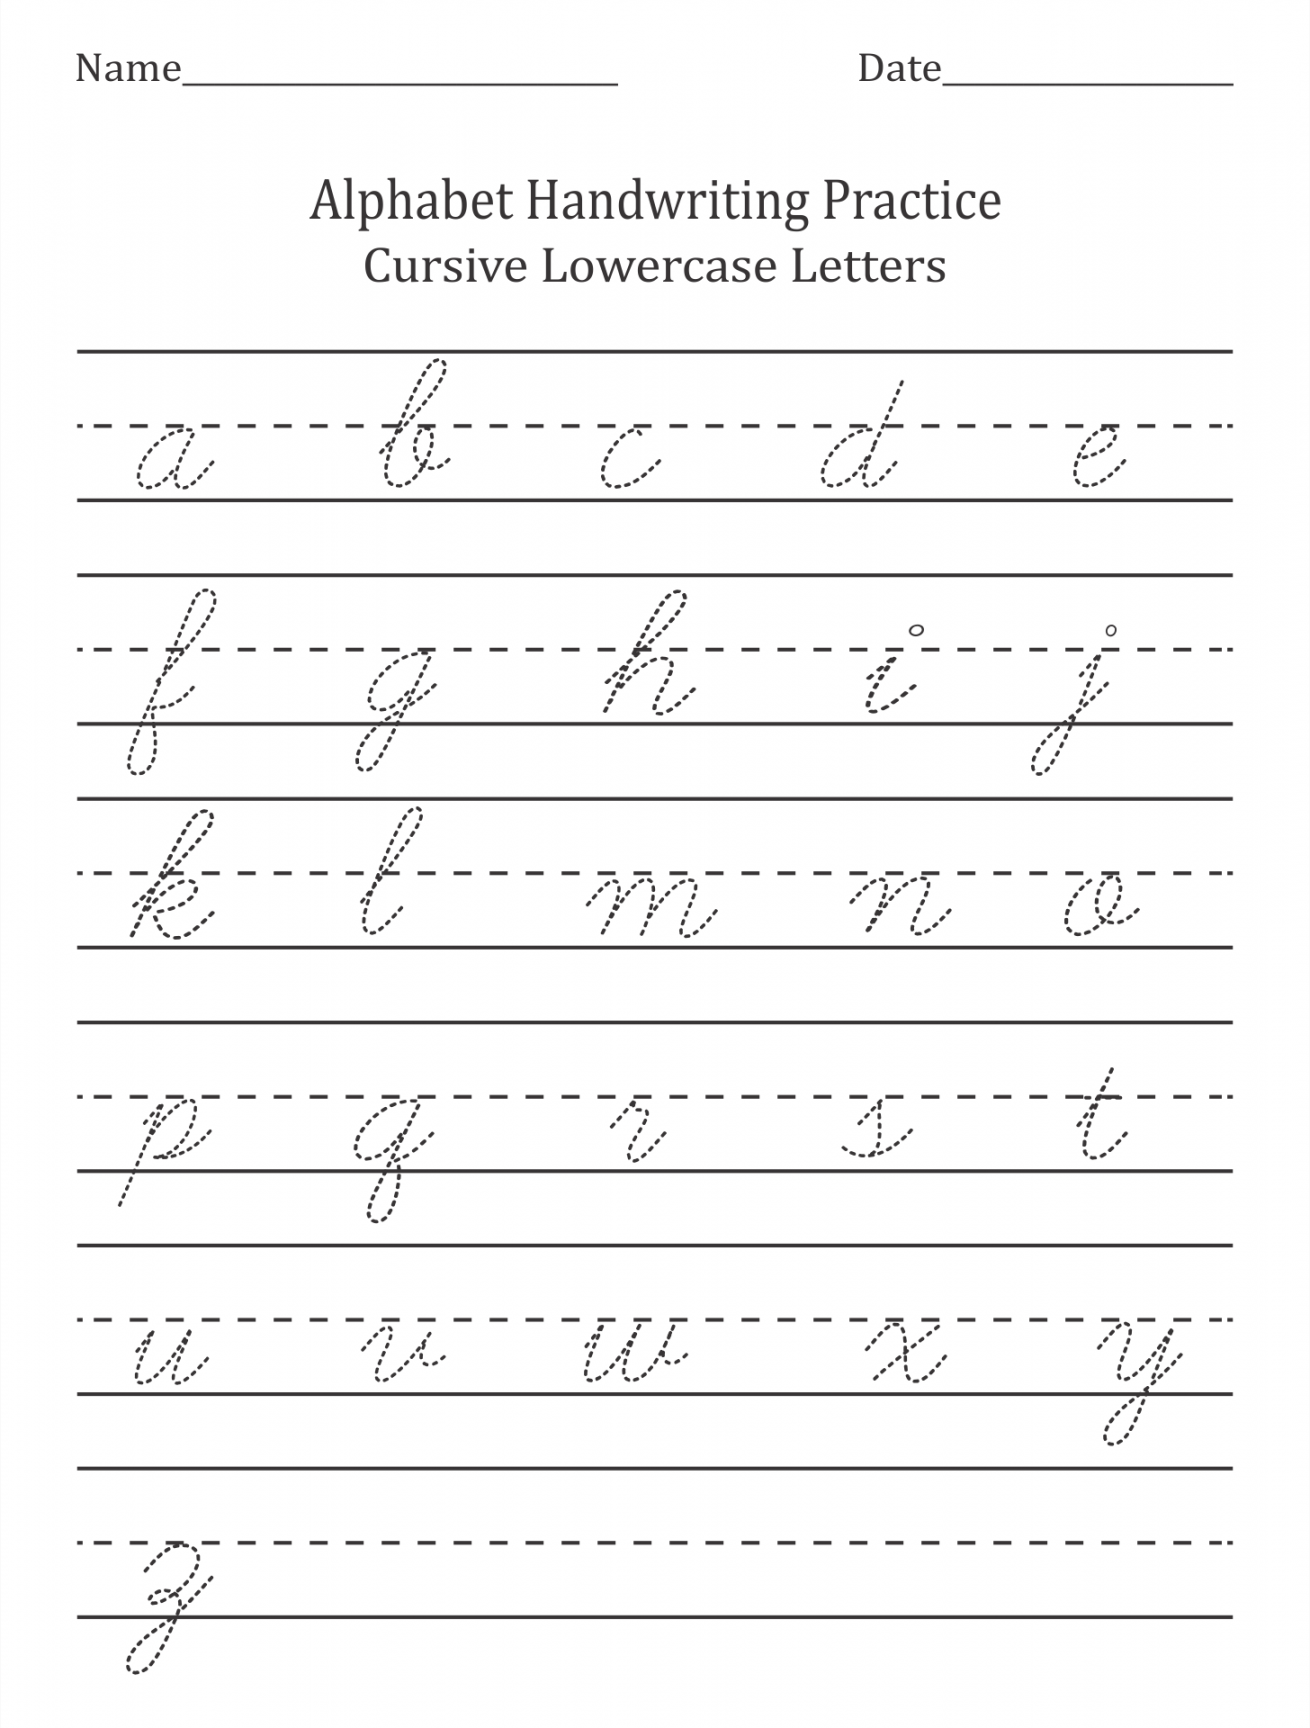 Free Printable Cursive Handwriting Worksheets - Printable -  Best Blank Cursive Worksheets Printable - printablee